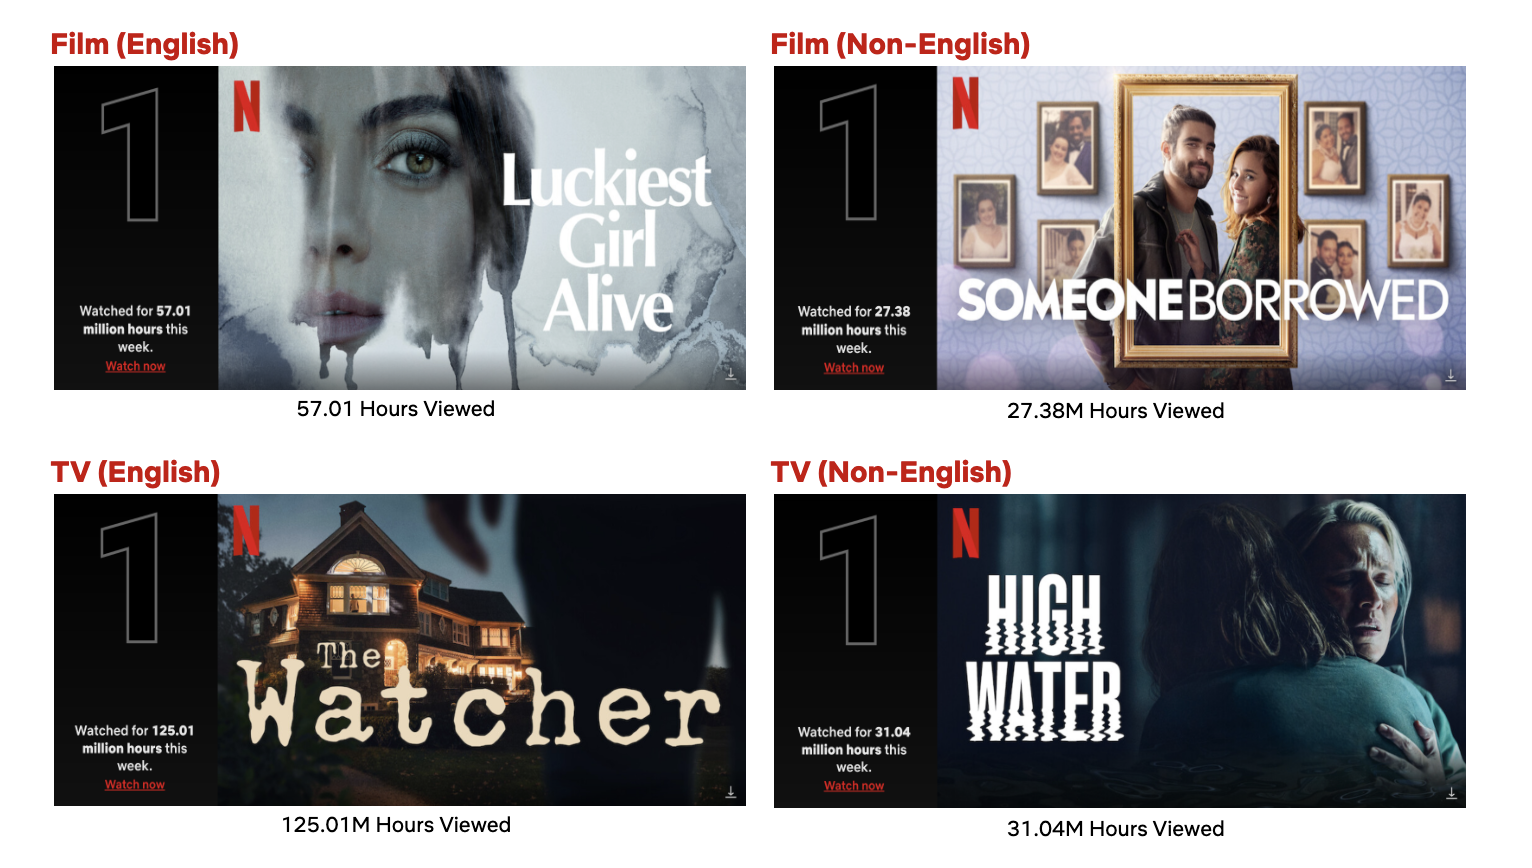 Séries Netflix recomendadas: 10 títulos para você assistir